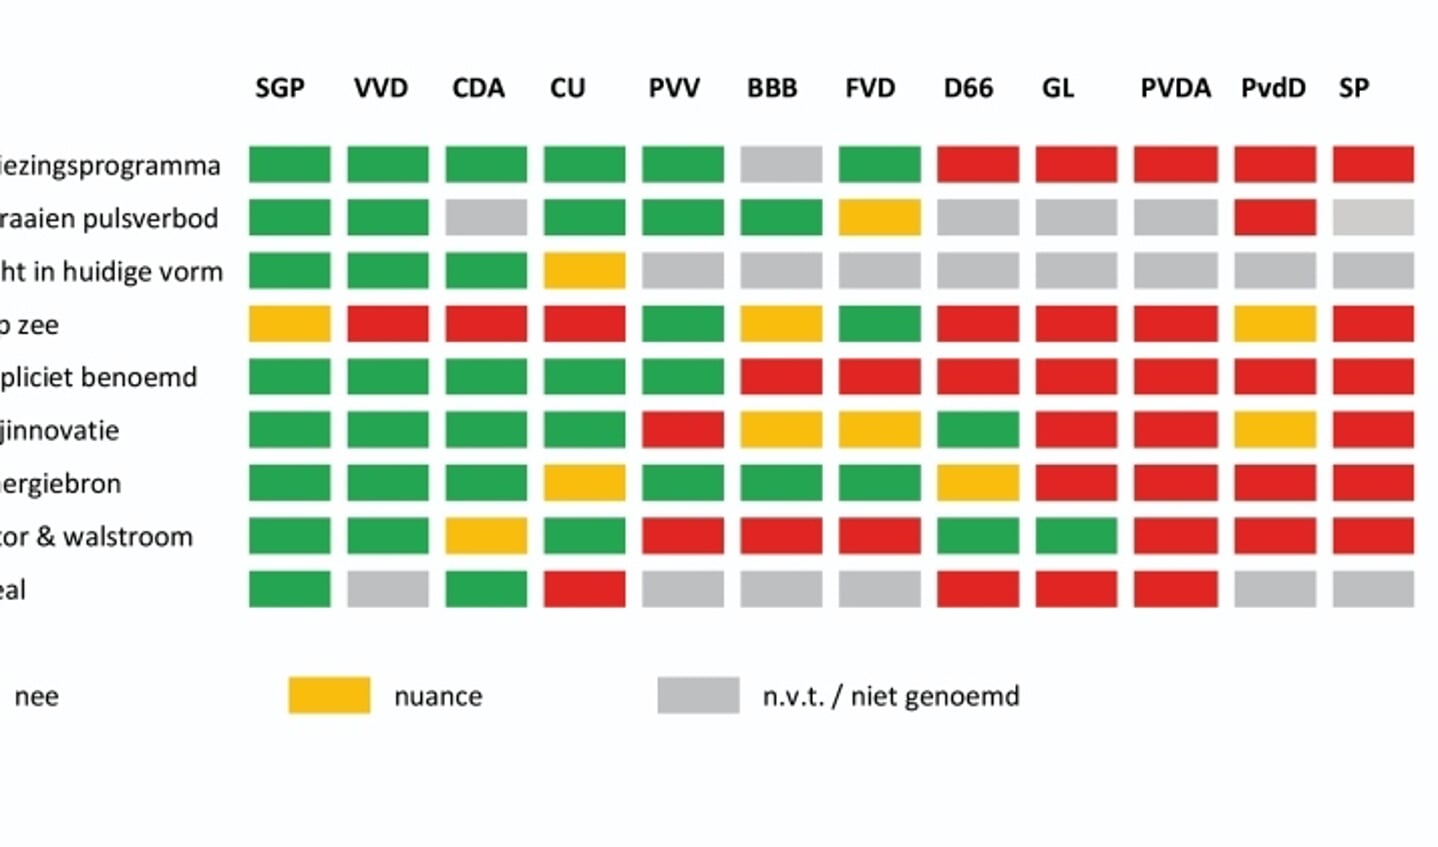  Groen = JA  Rood = NEE  Oranje = voorwaardelijk of deels  Grijs = niet van toepassing / niet benoemd